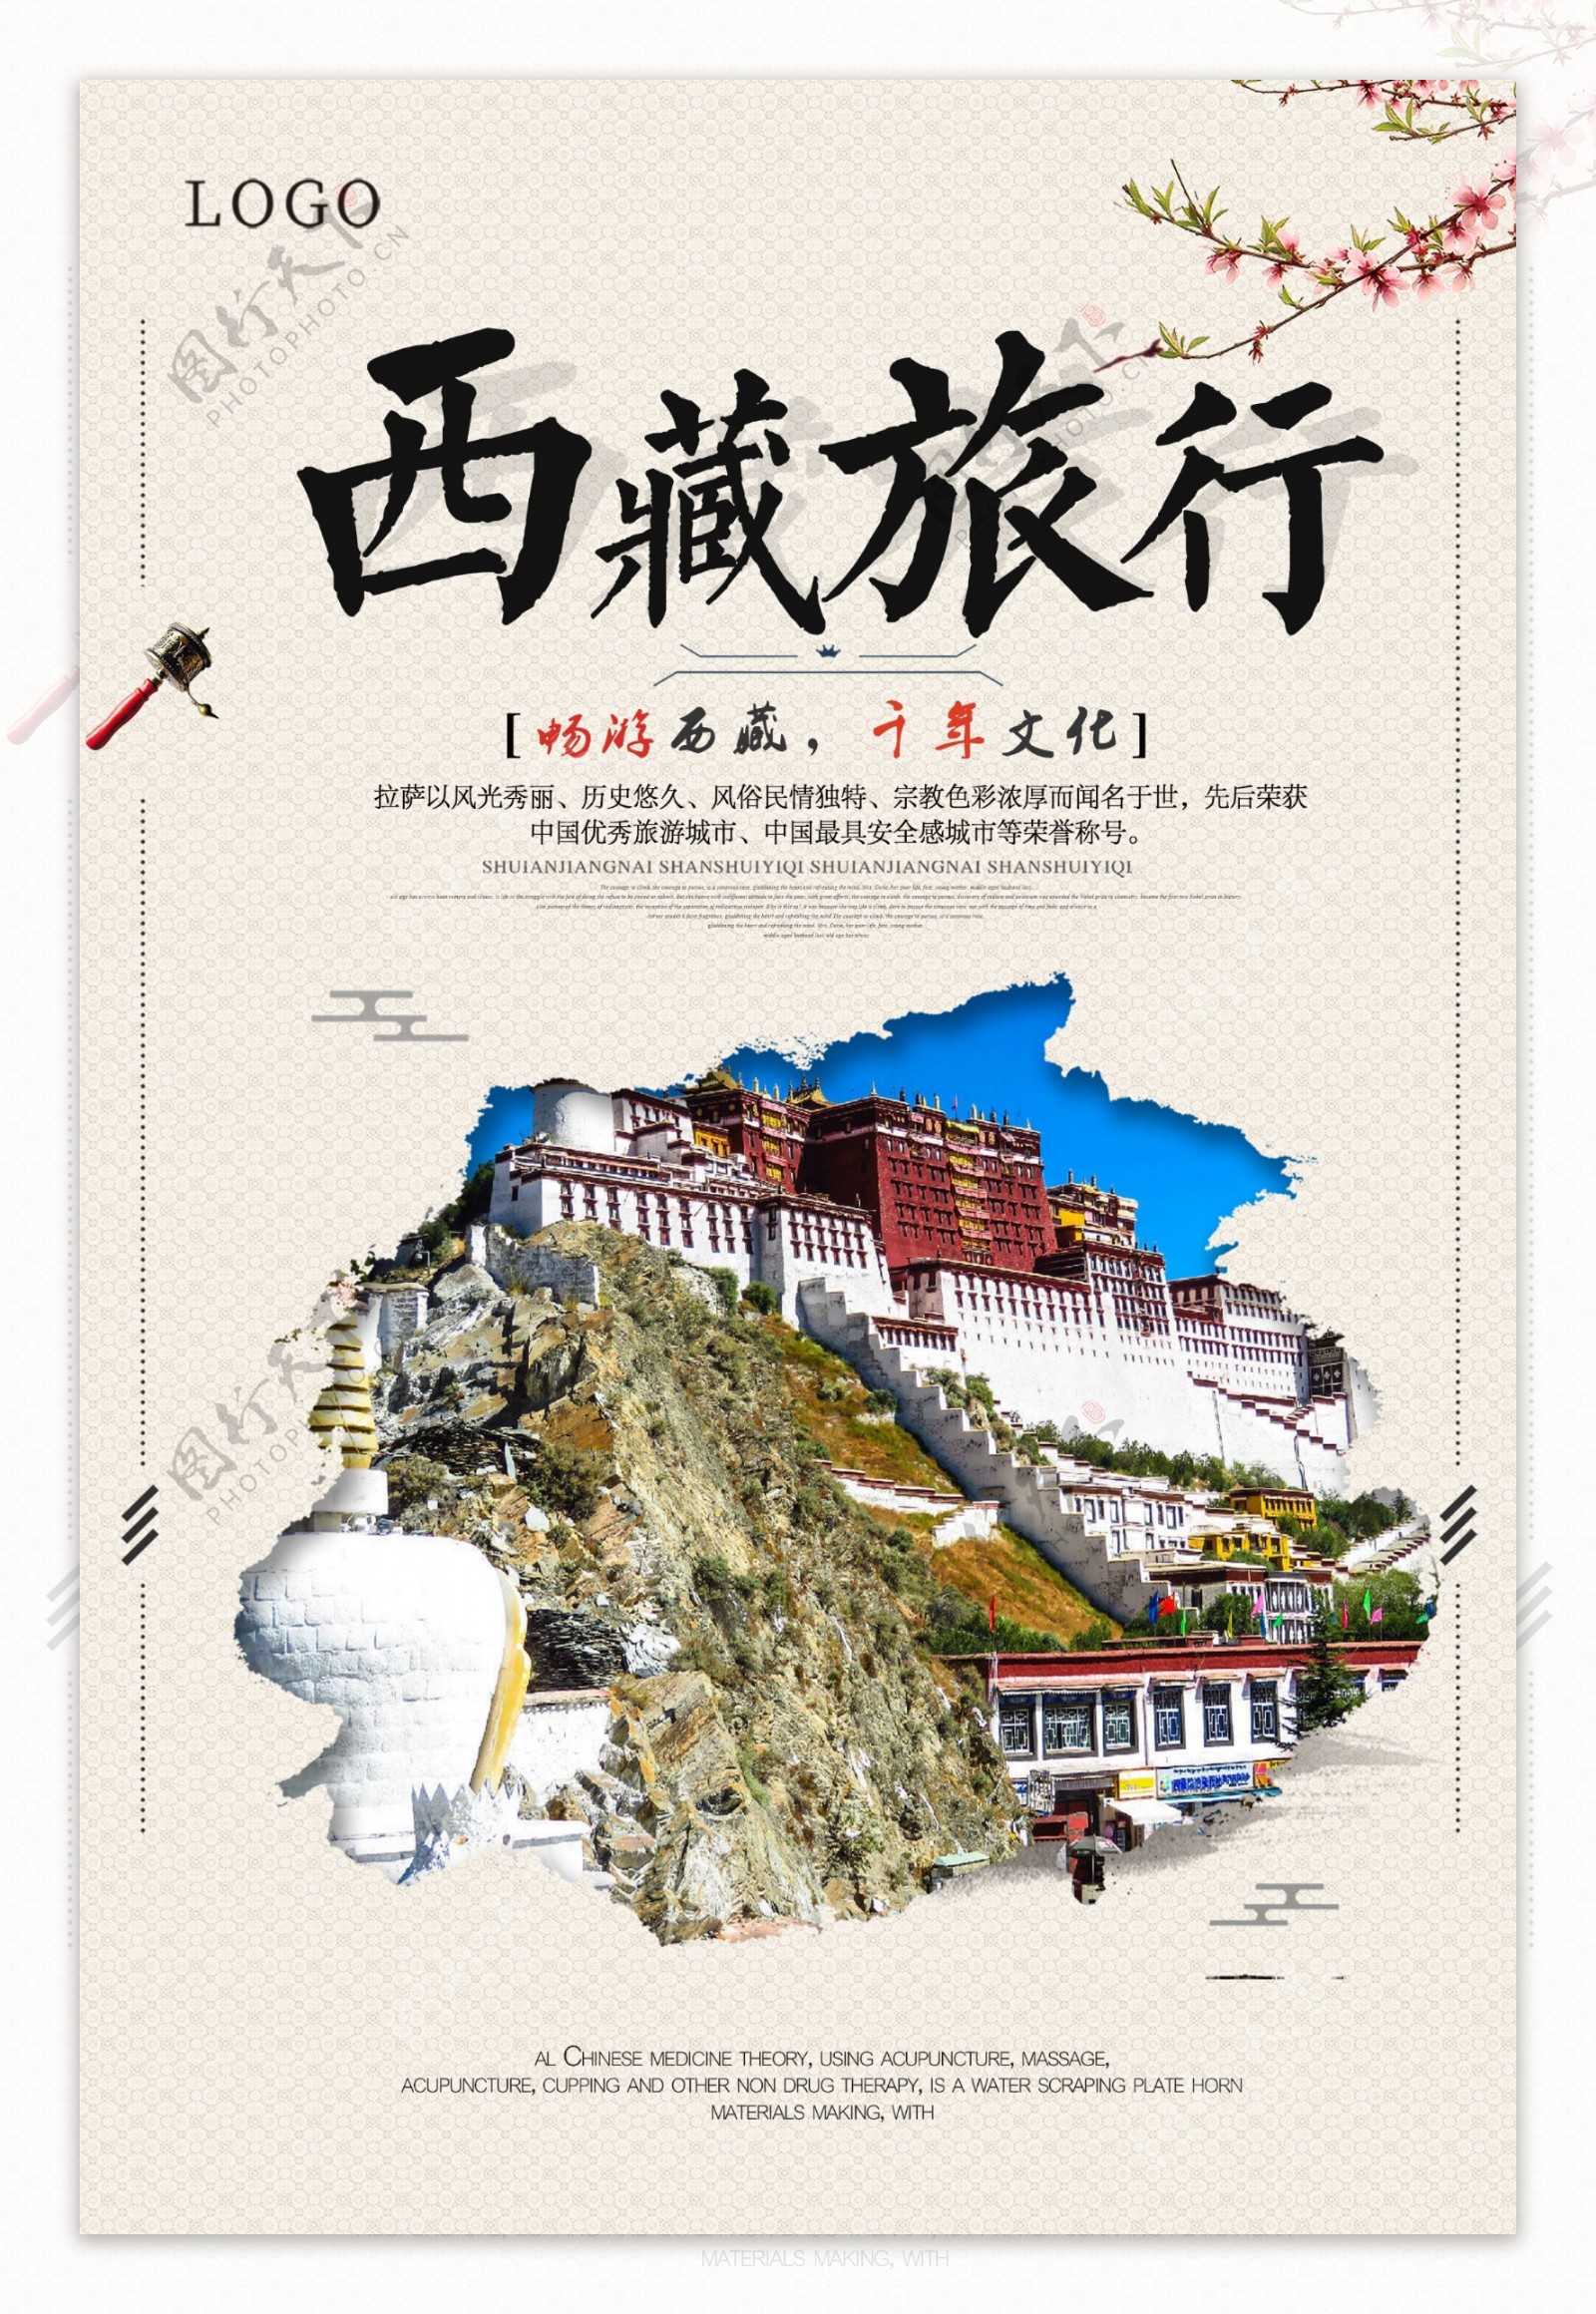 简约文艺风格西藏旅游海报